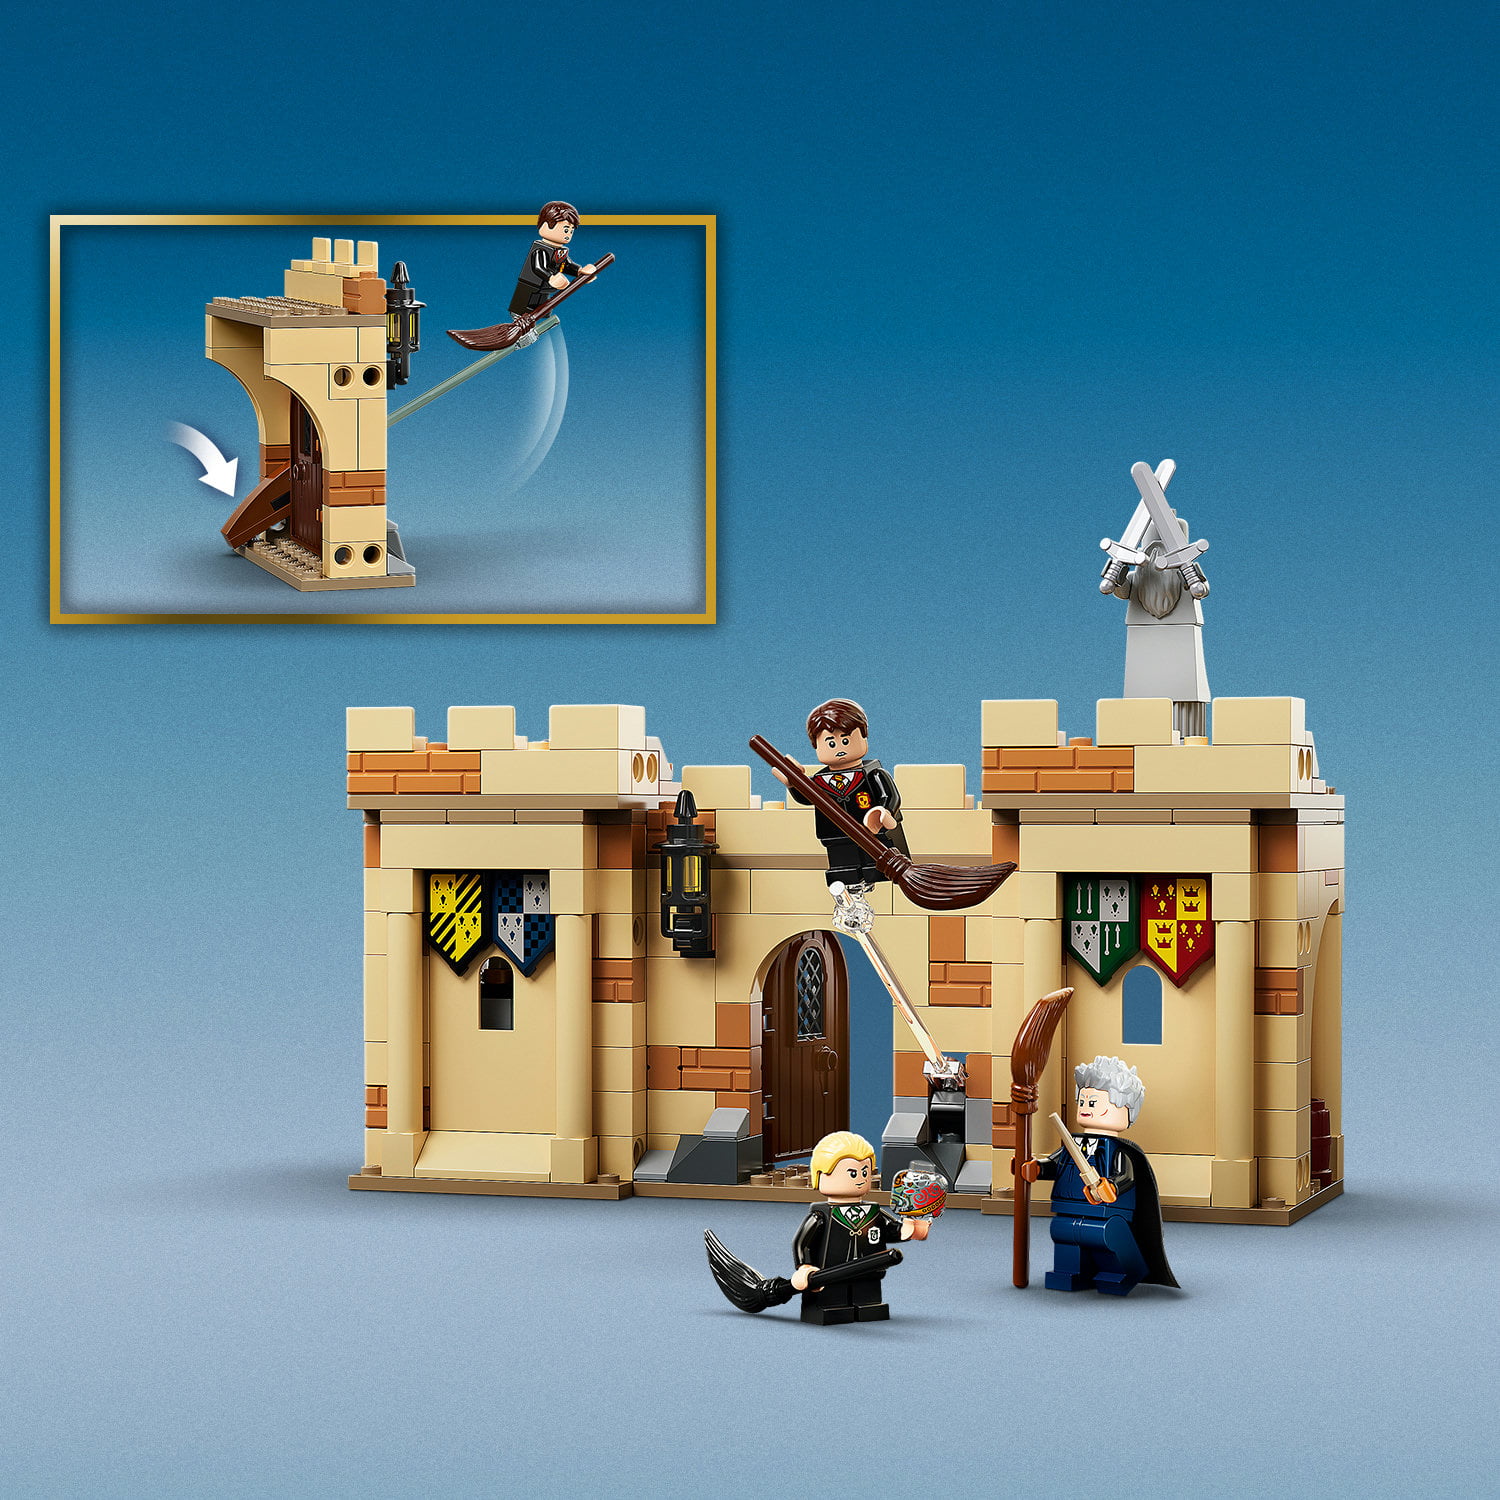 LEGO Harry Potter 76395 Hogwarts Primeira Lição de Voo - LEGO - Compra na